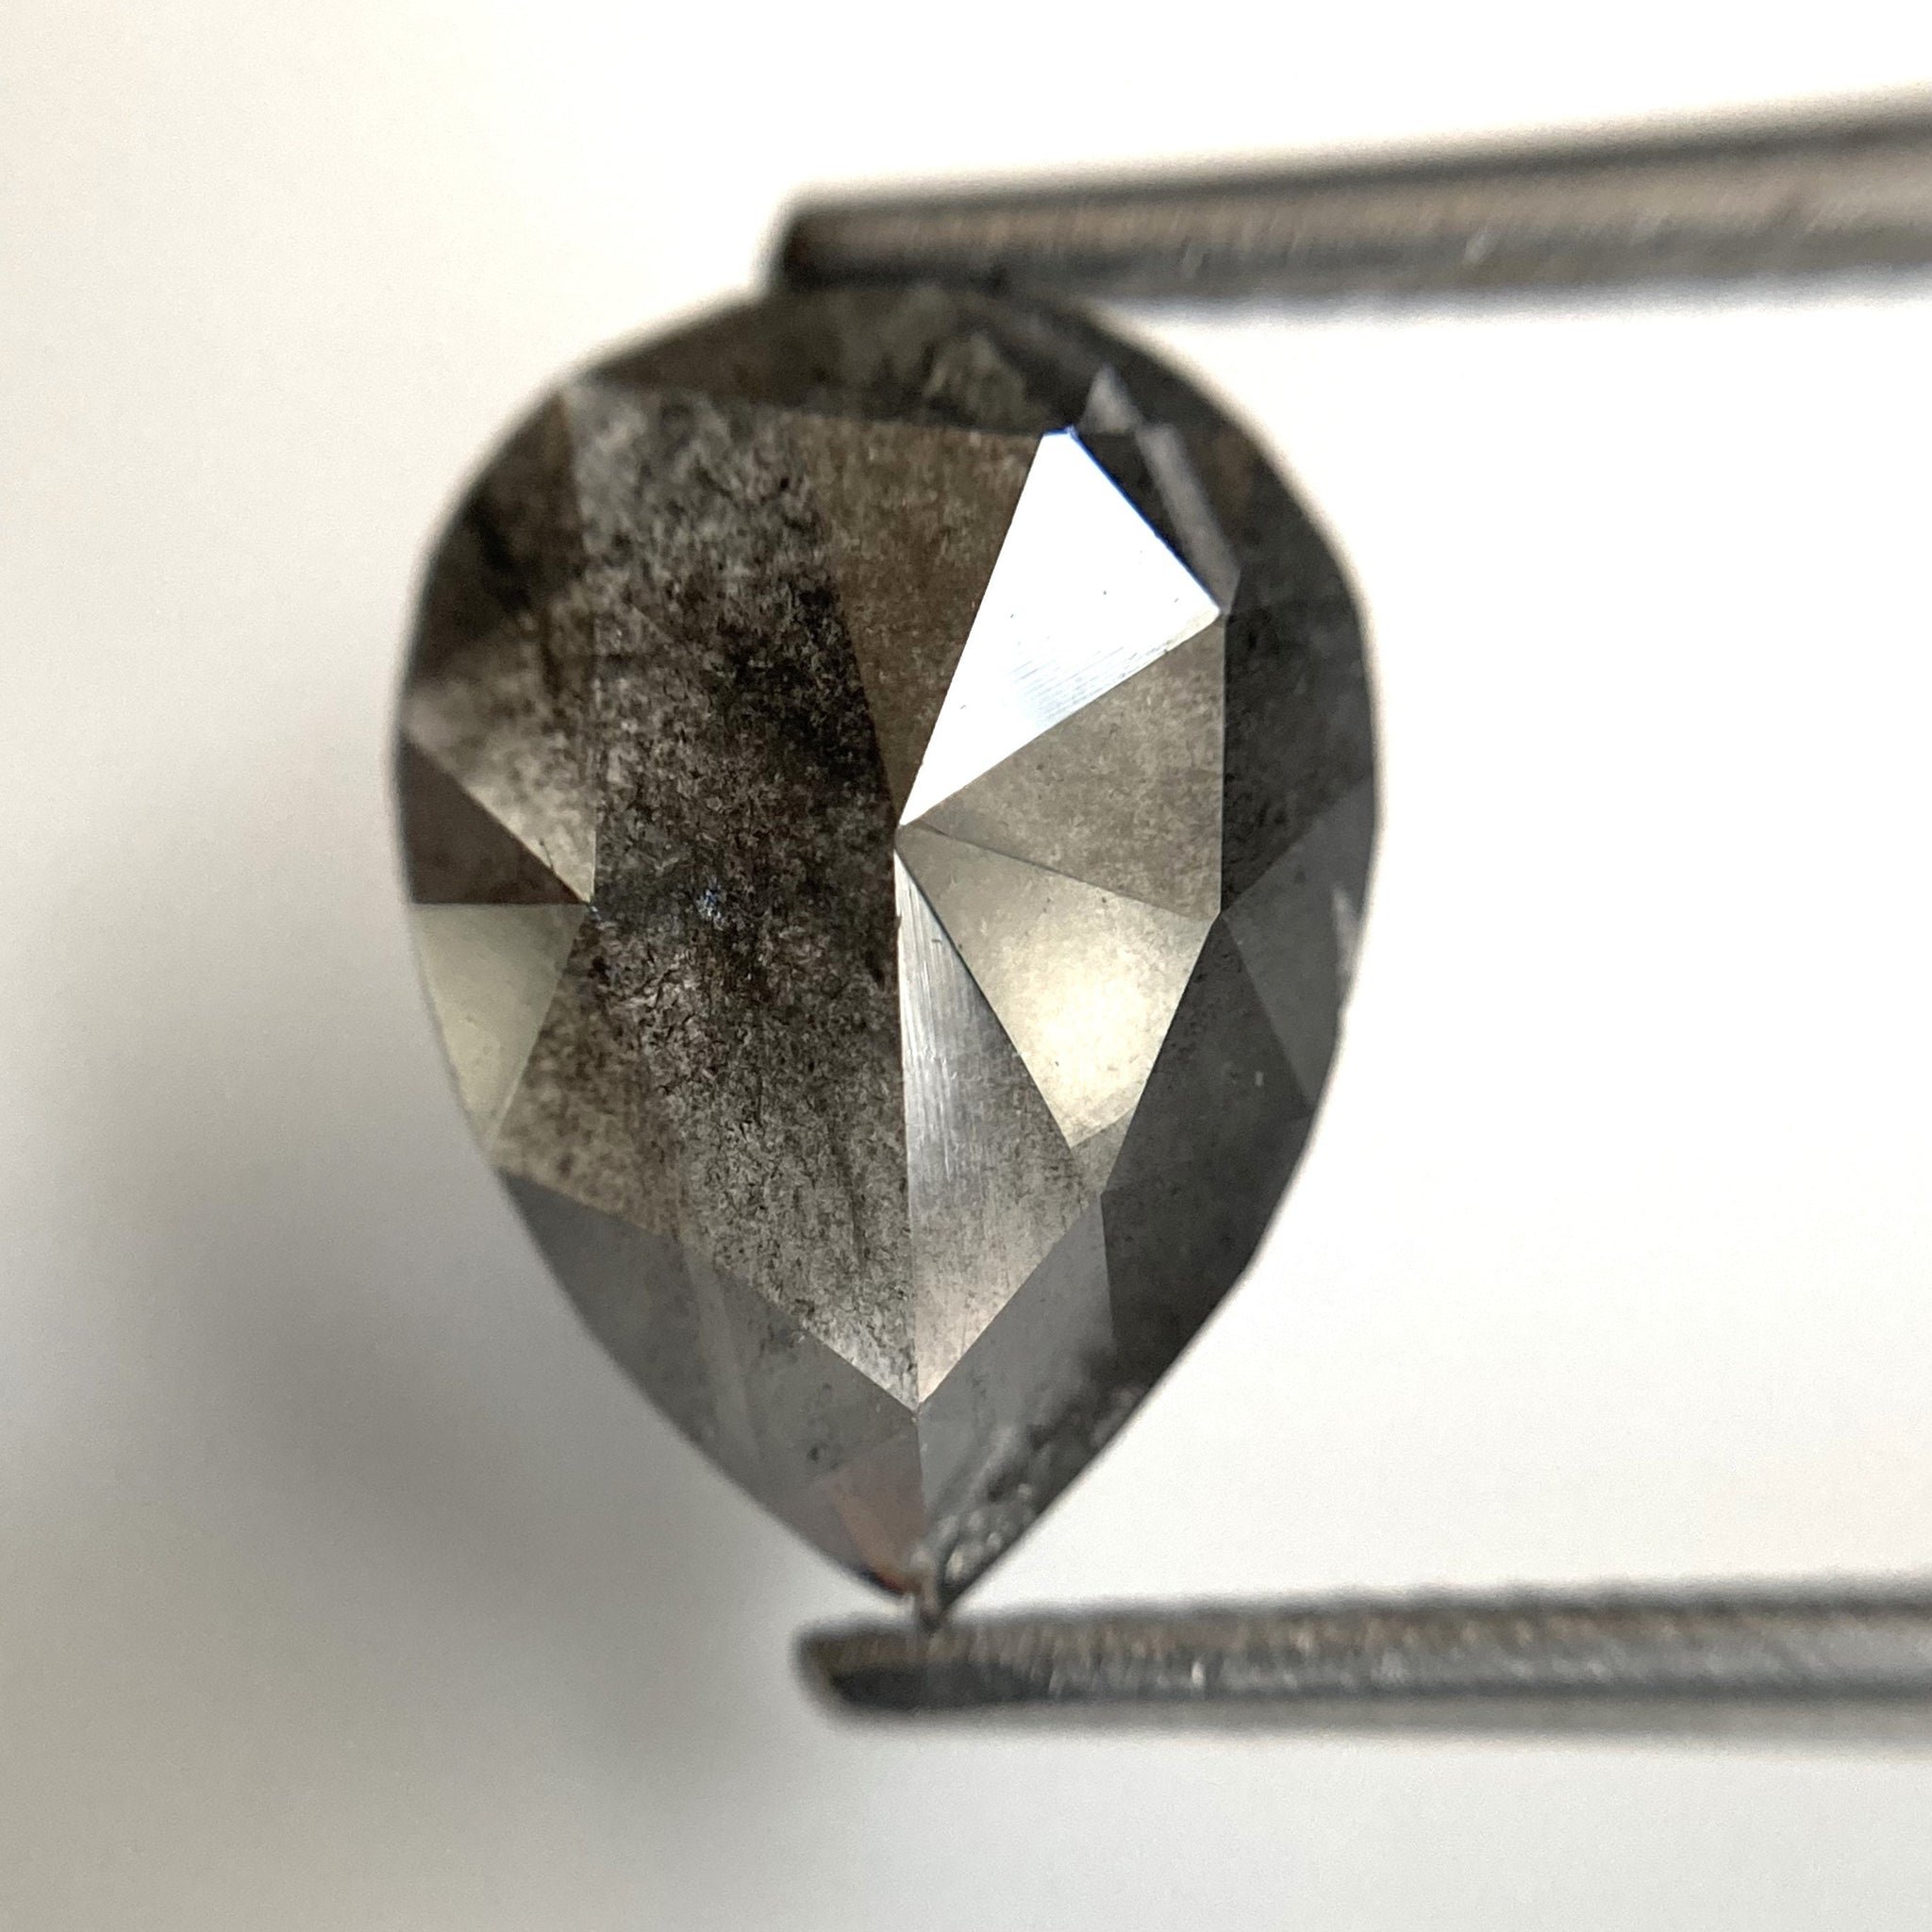 2.53 Ct Pear Shape natural loose diamond, salt and pepper diamond, 11.88 mm x 8.82 mm x 3.08 mm Flat-Base pear shape natural diamond SJ87-47